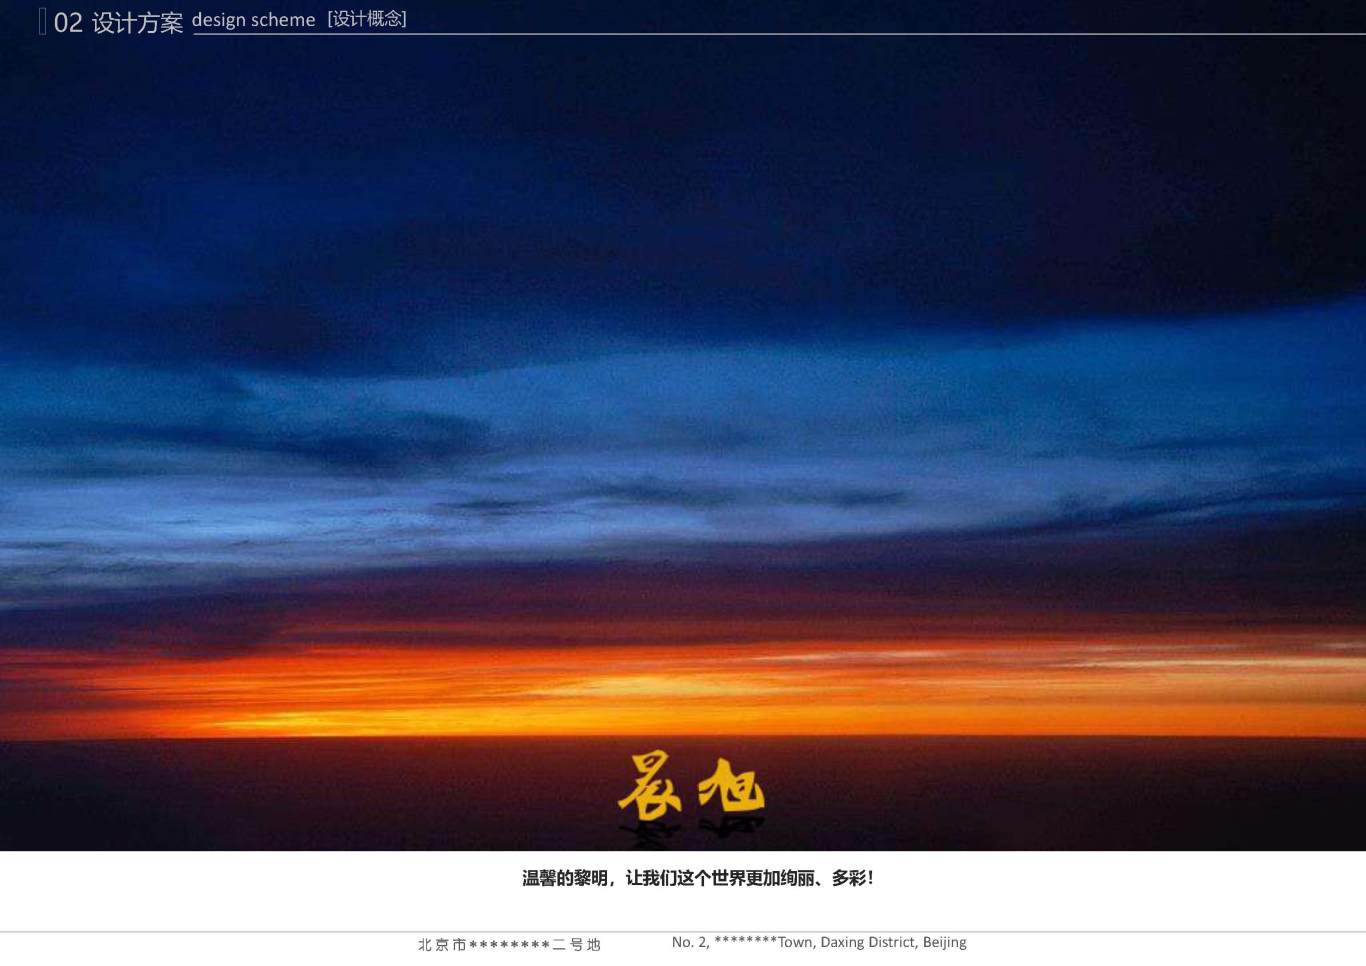 北京市大兴区*****二号地夜景照明项目案例图16